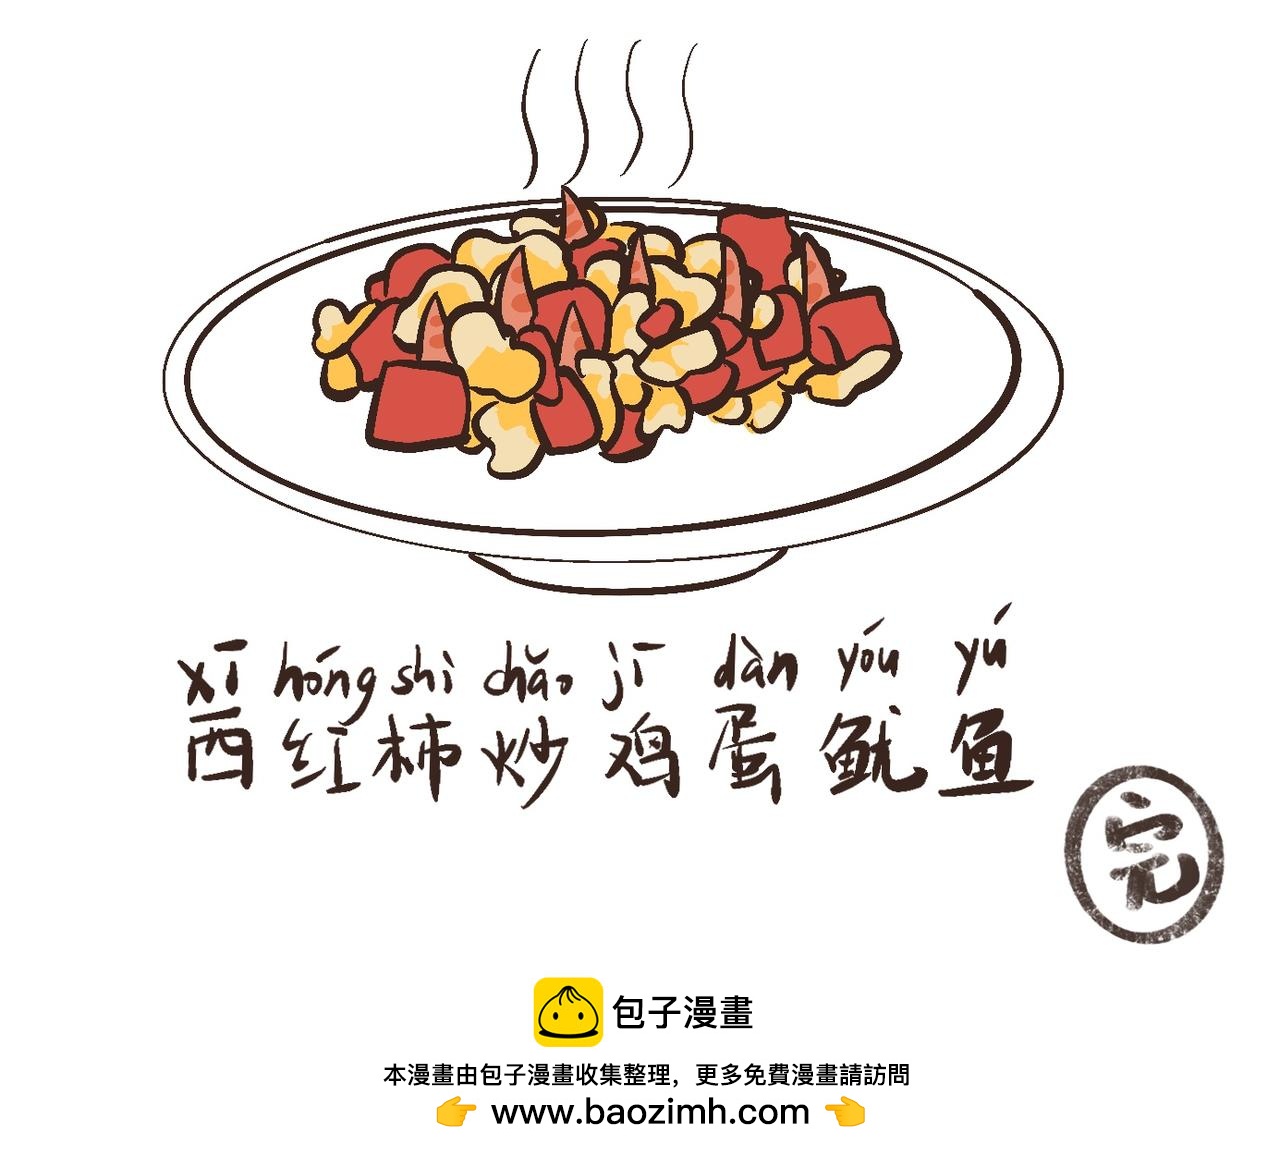 西紅柿炒雞蛋 - 昭柿出塞 - 4